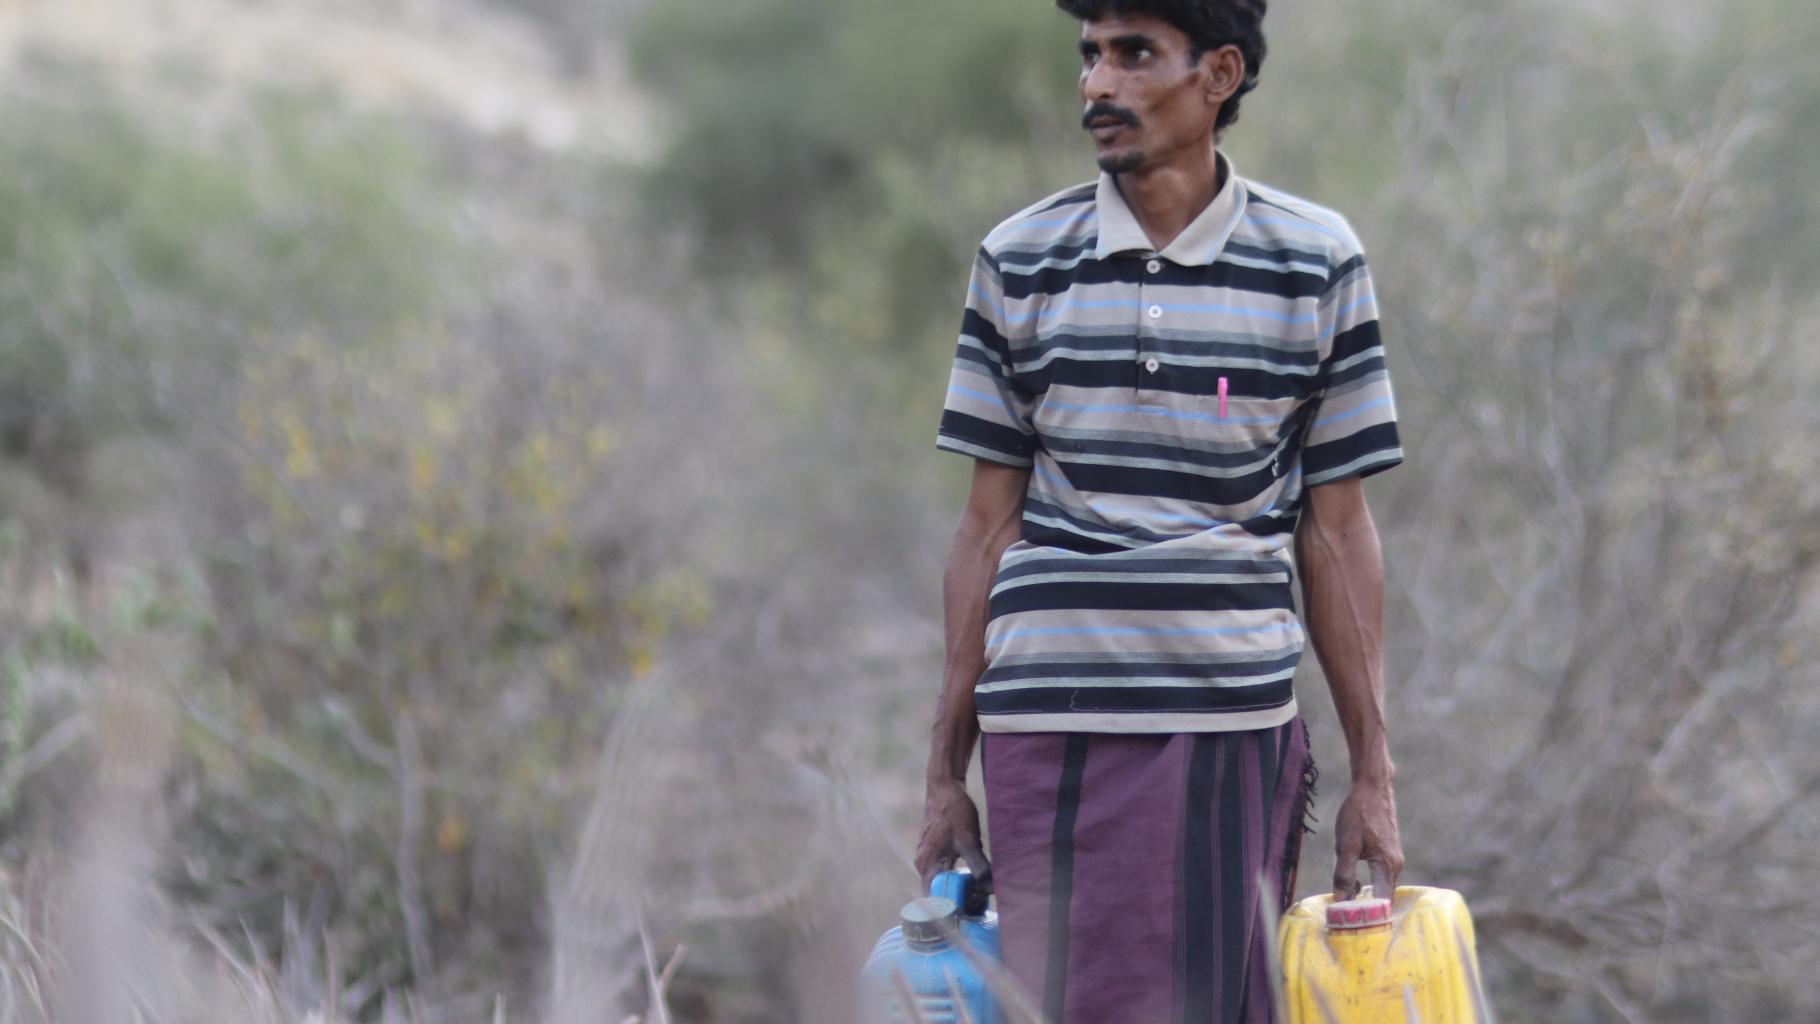 Ali trägt zwei Wasserkanister durch eine trockene Landschaft.